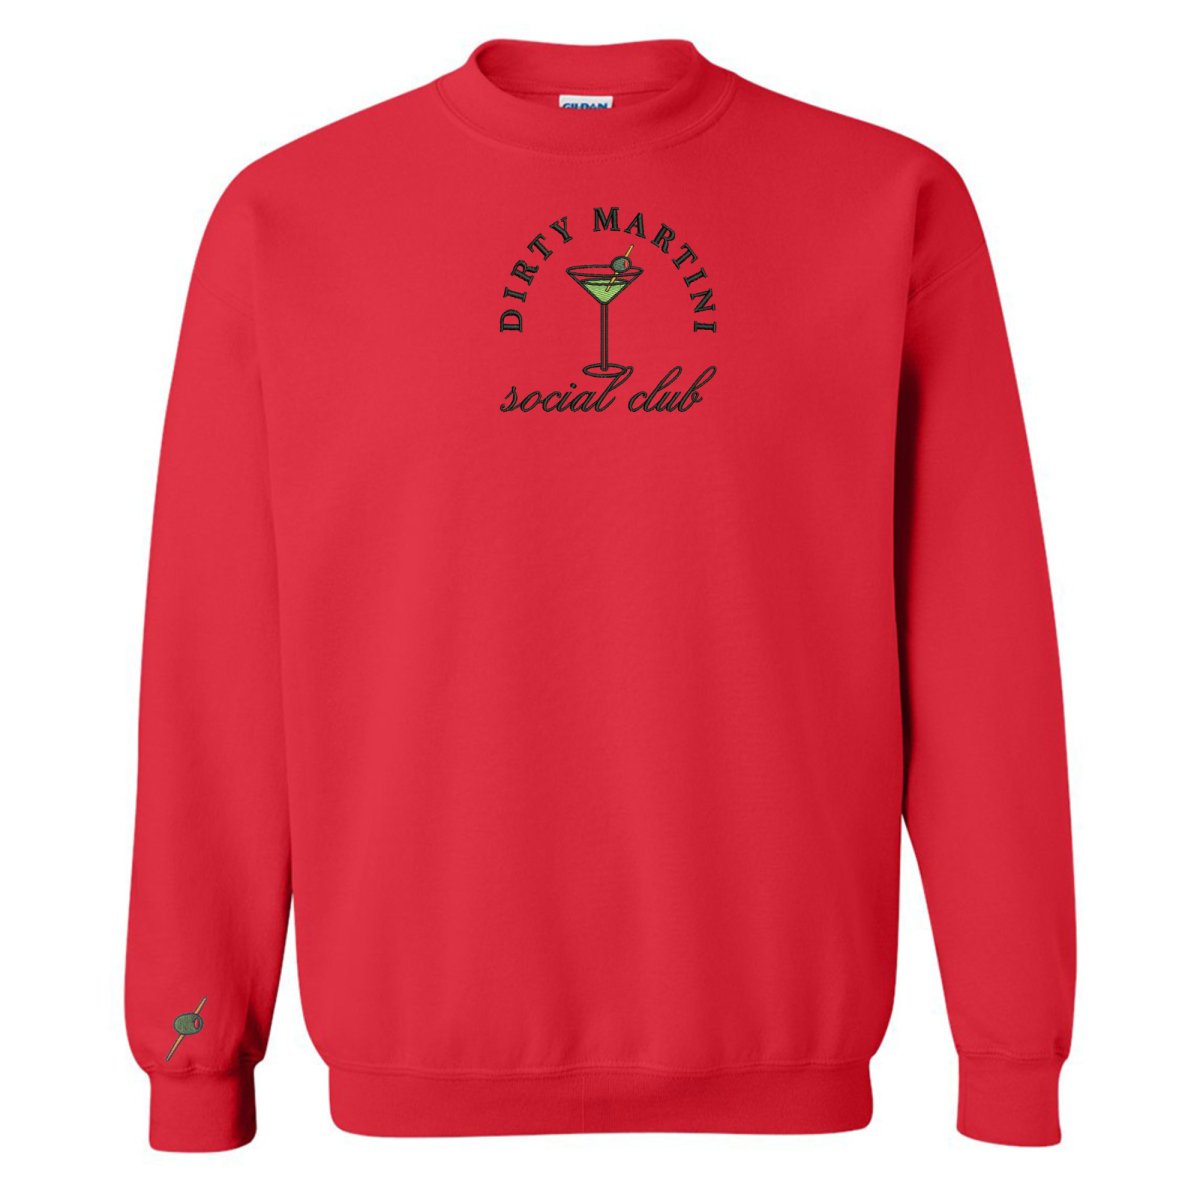 'Dirty Martini Social Club' Crewneck Sweatshirt - United Monograms